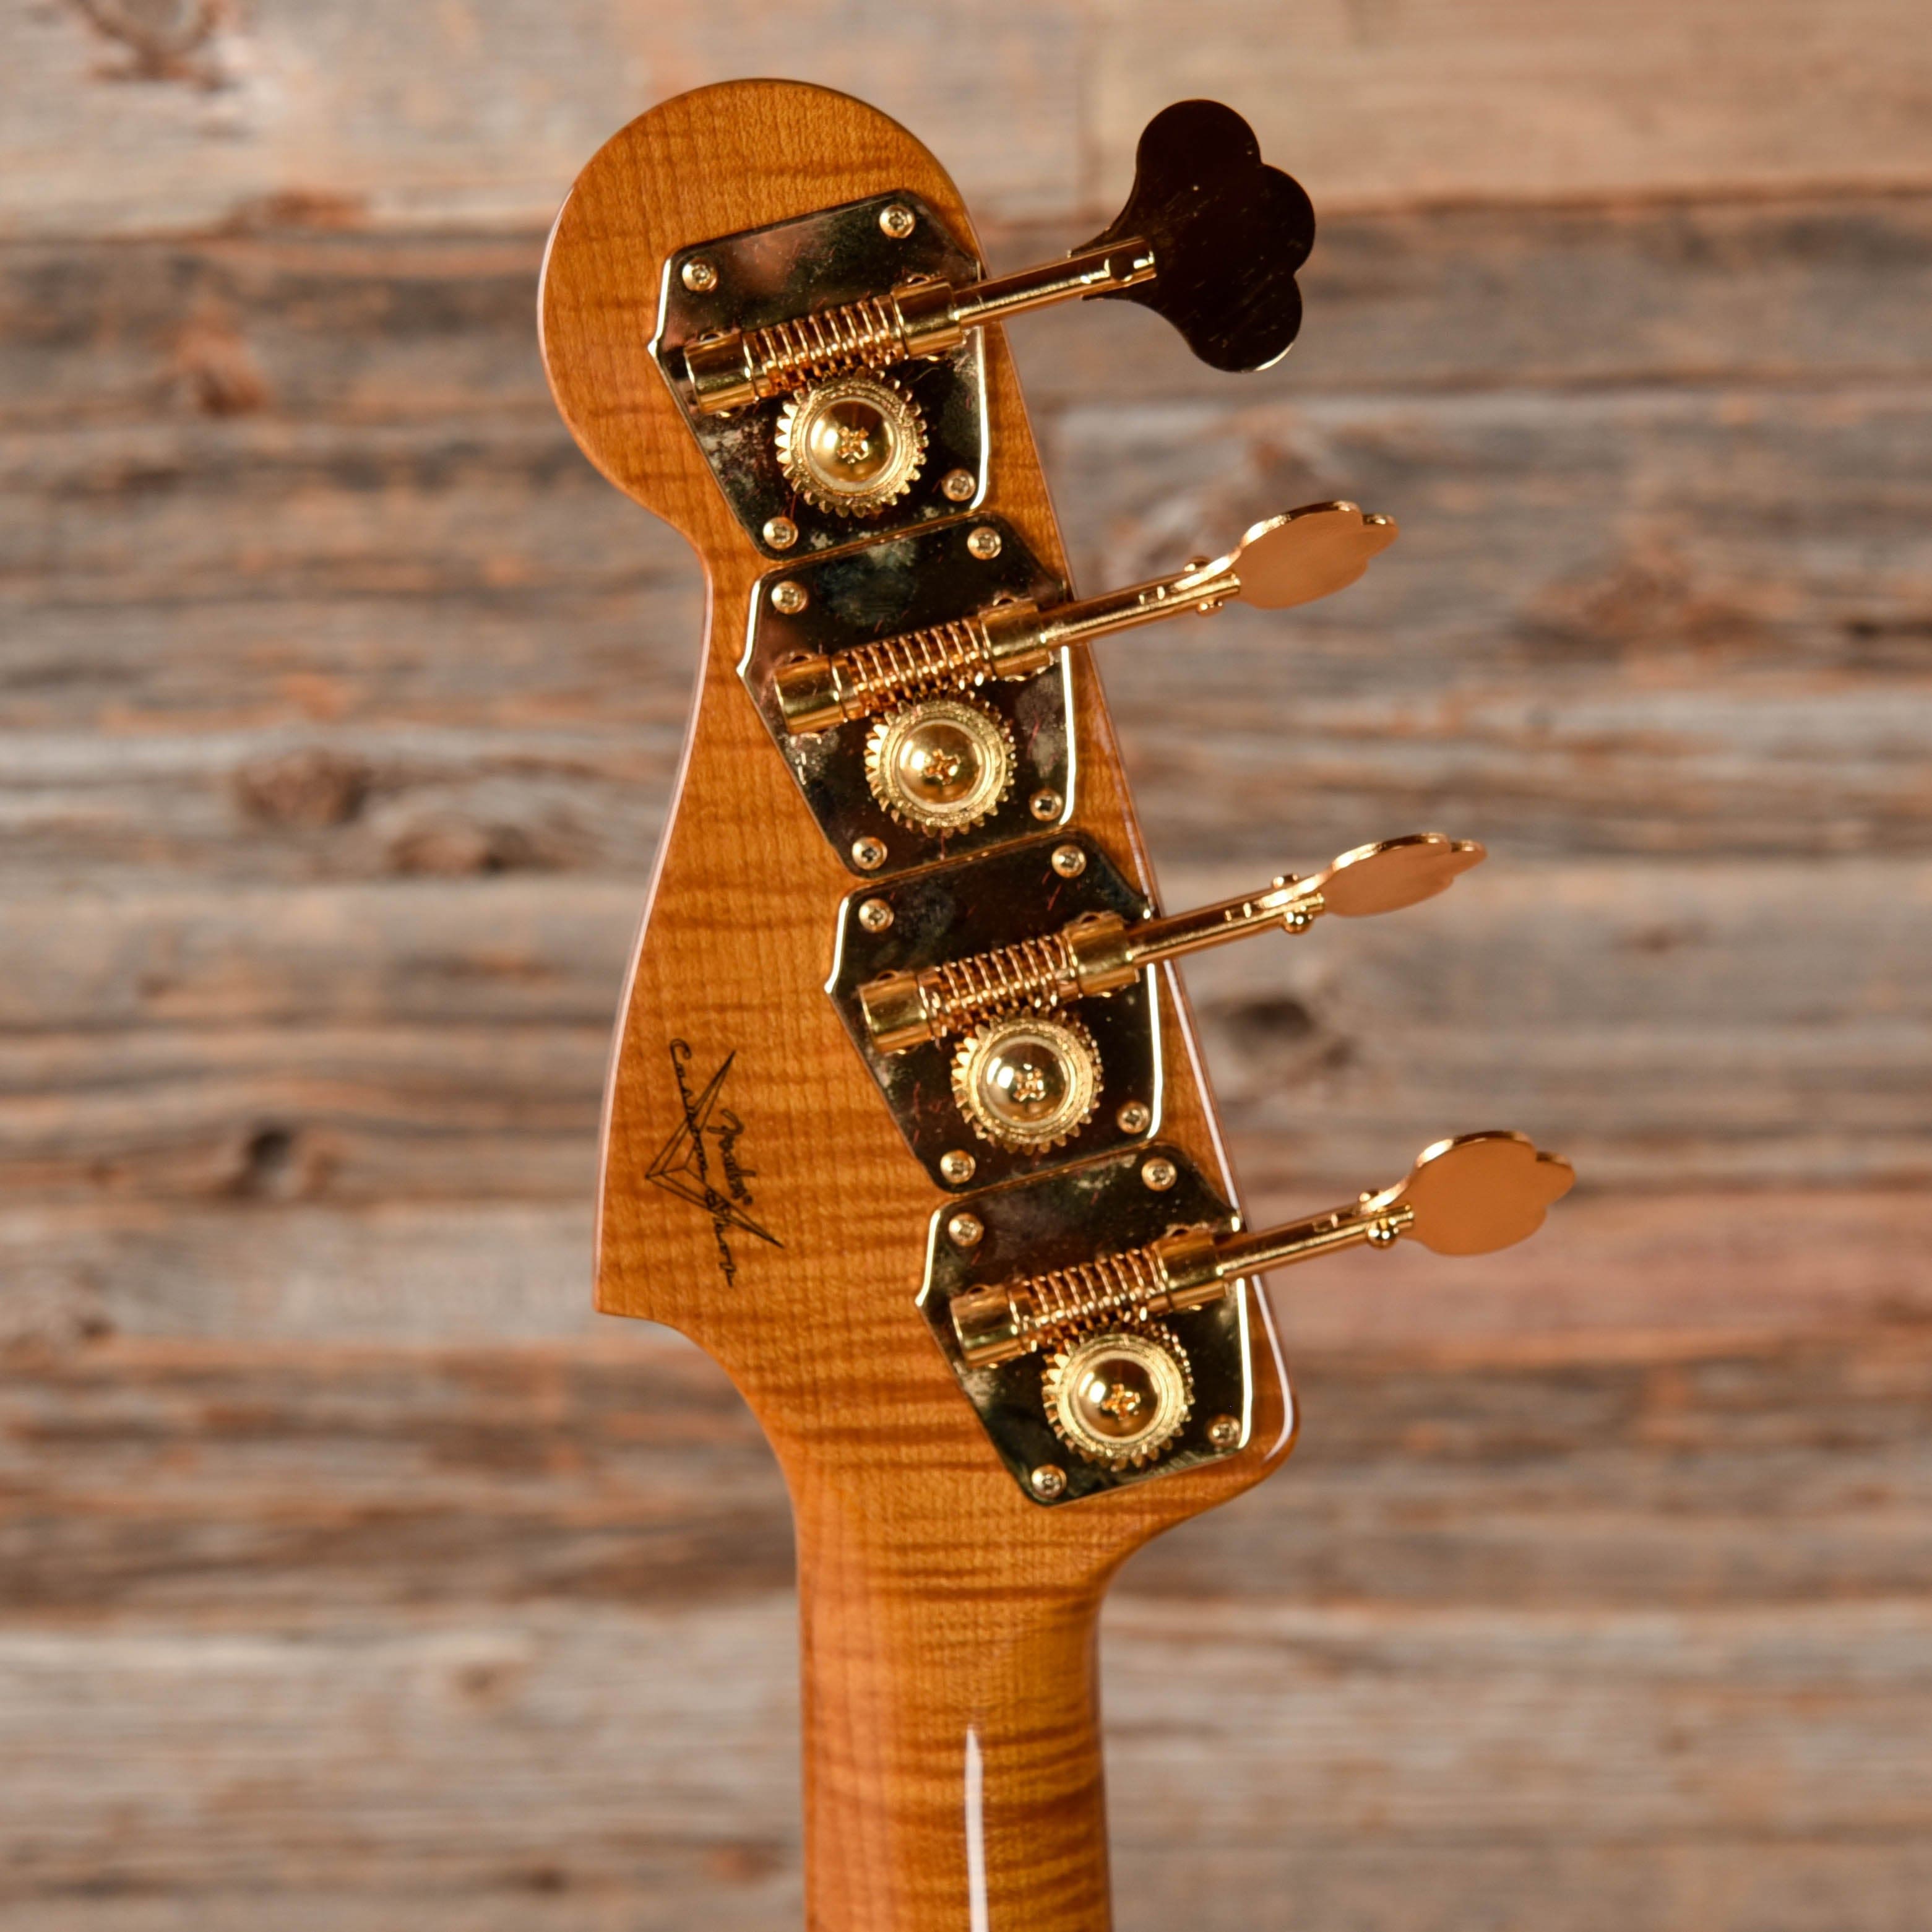 Fender Custom Shop 57 Precision Bass Reissue Ash NOS Wide Fade Chocolate 2-Color Sunburst 2022 Bass Guitars / 4-String